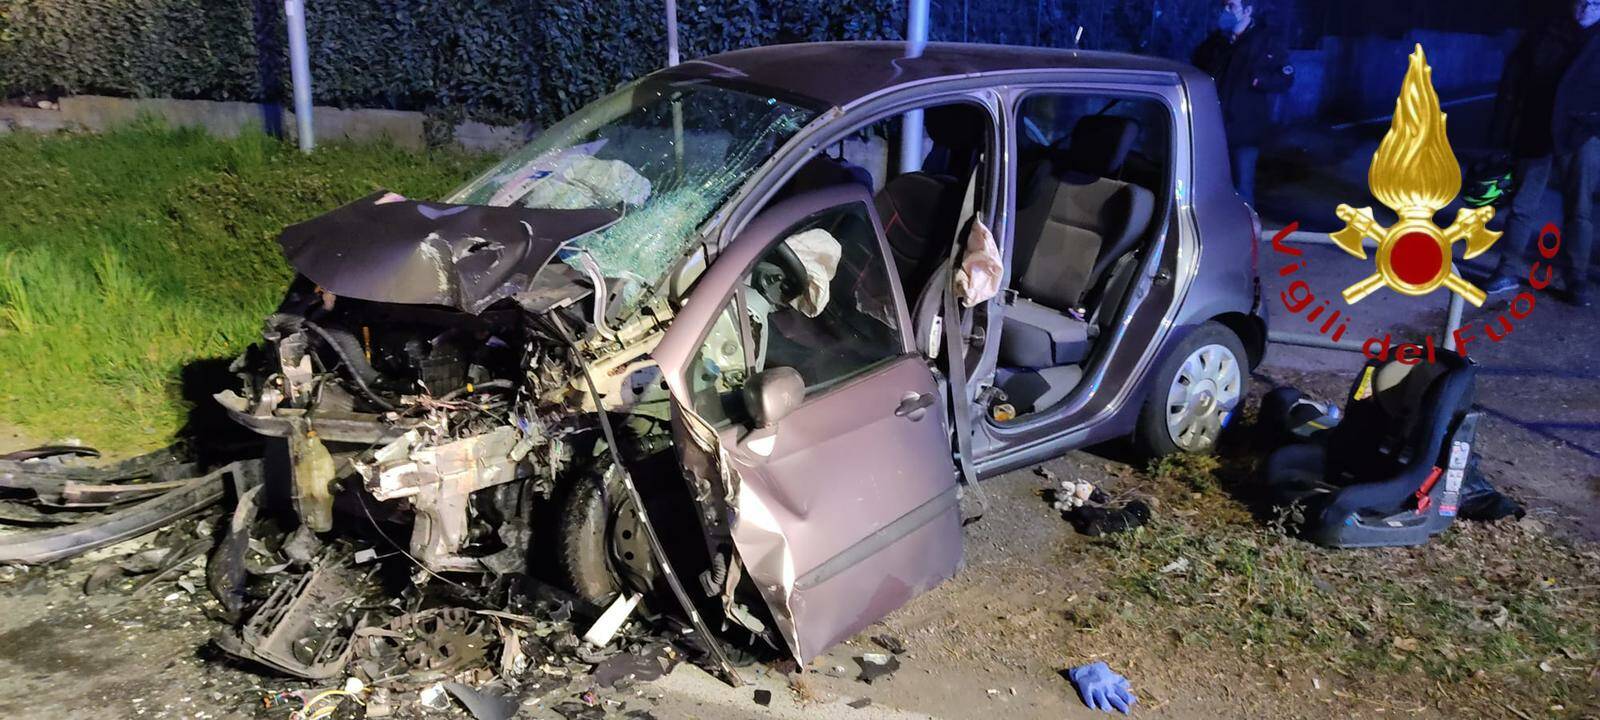 incidente tra auto cermenate via europa unita soccorsi vetture distrutte